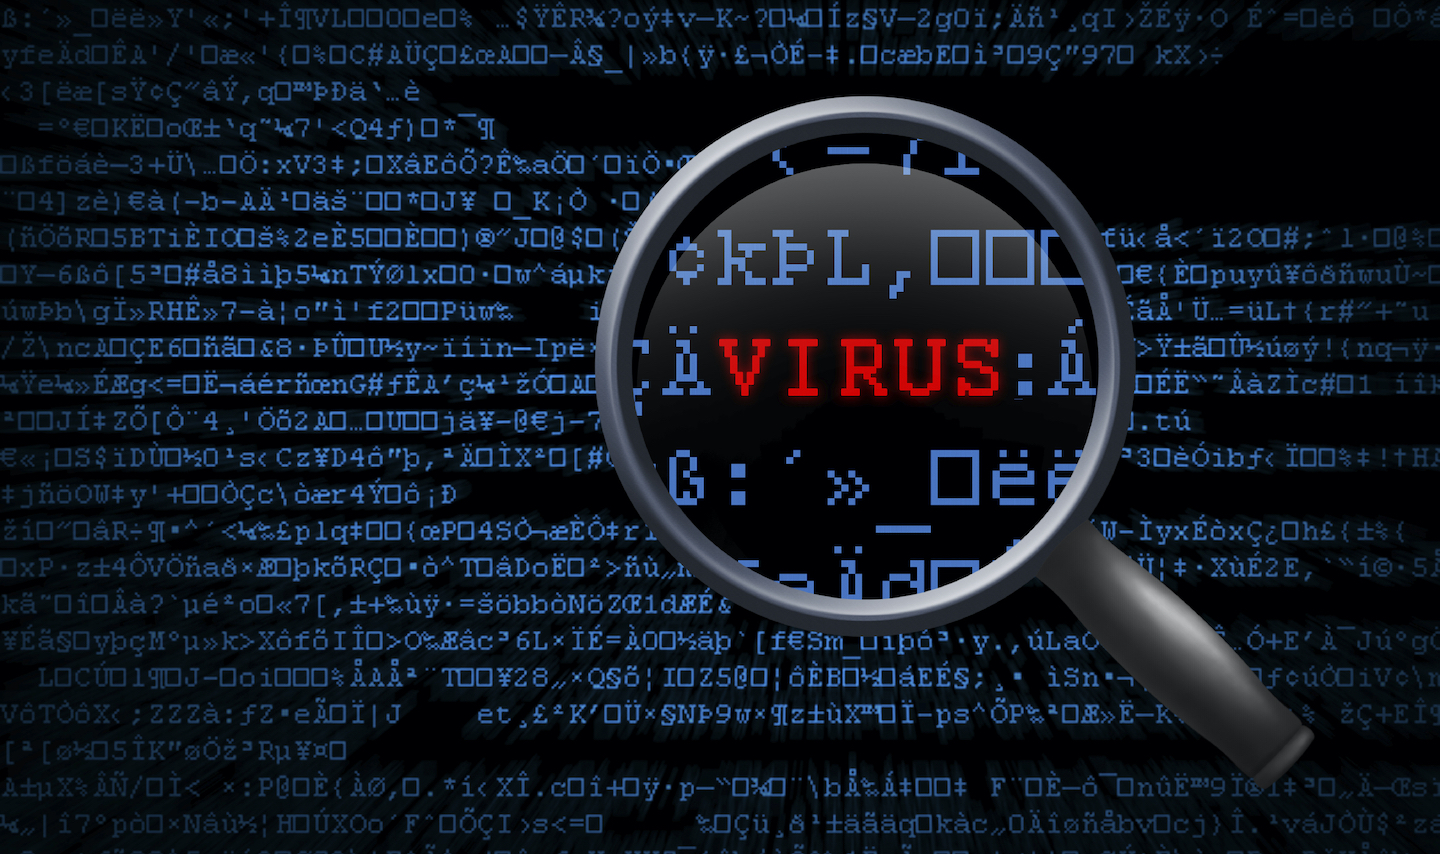 Versla de virussen zonder scanners